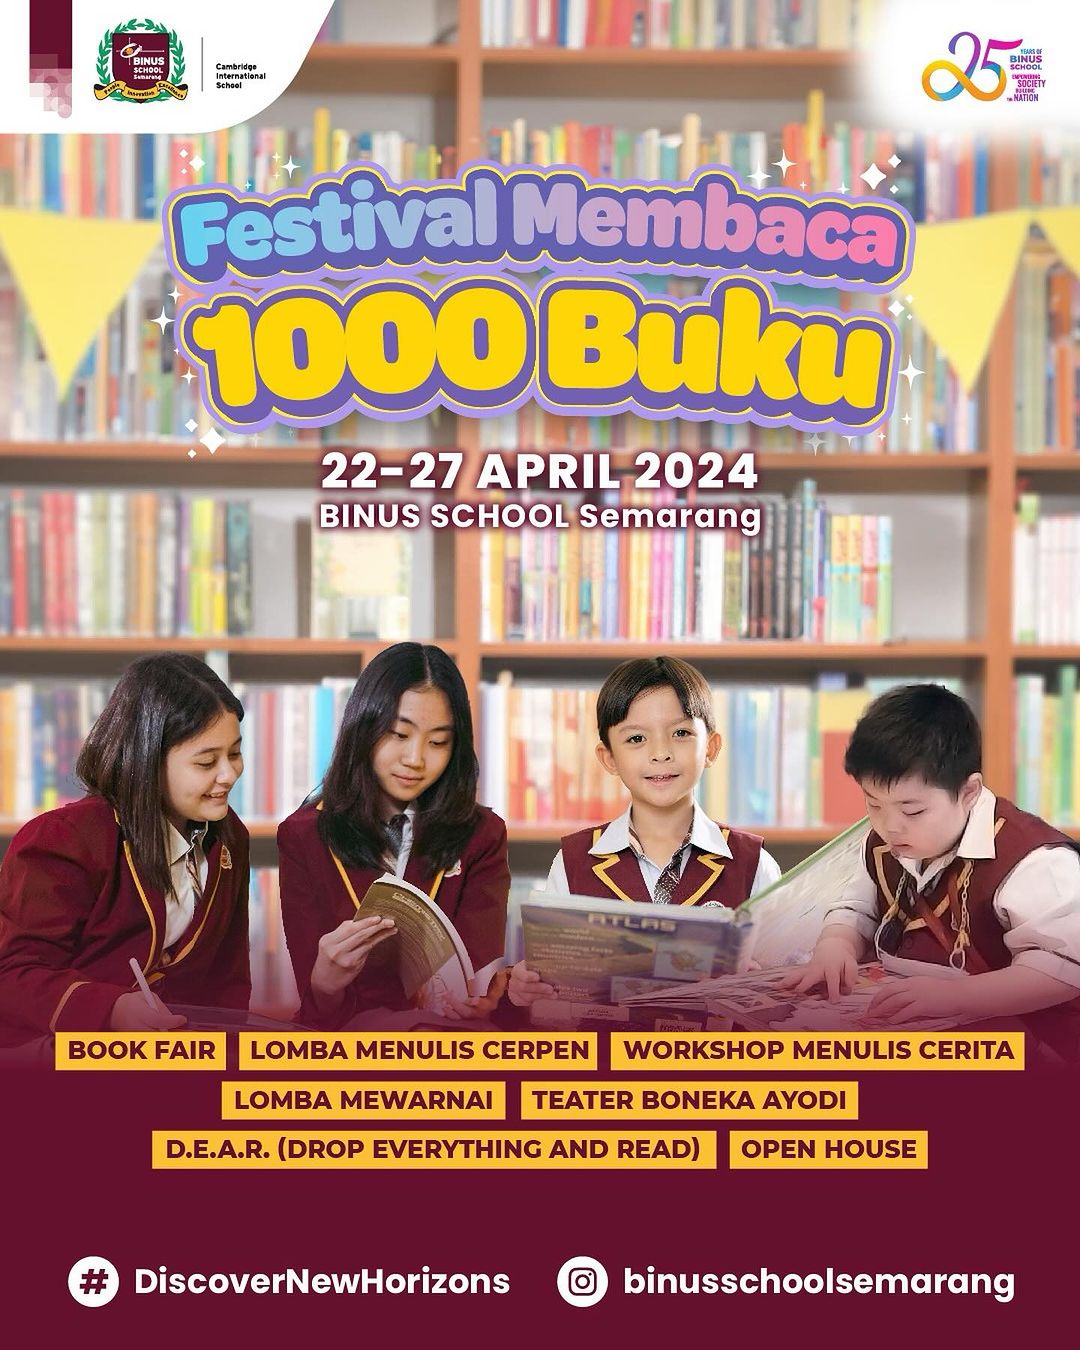 Ajak Siswa Meningkatkan Minat Baca, BINUS SCHOOL Semarang Adakan Festival Membaca 1000 Buku